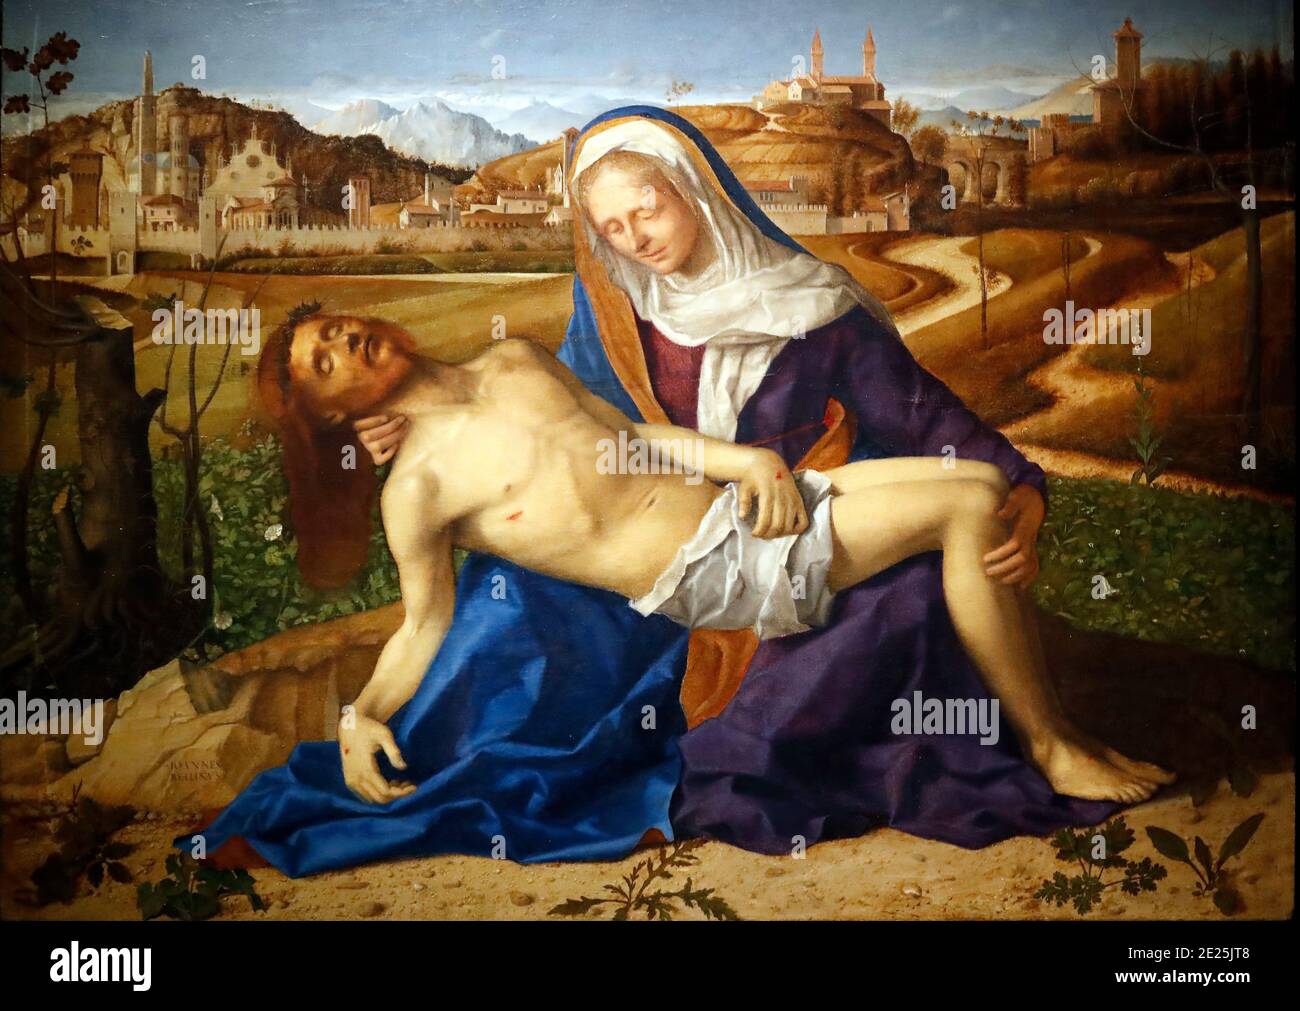 Gallerie dell'Accademia. Pieta by Giovanni Bellini 1505. Wood Panel. Stock Photo